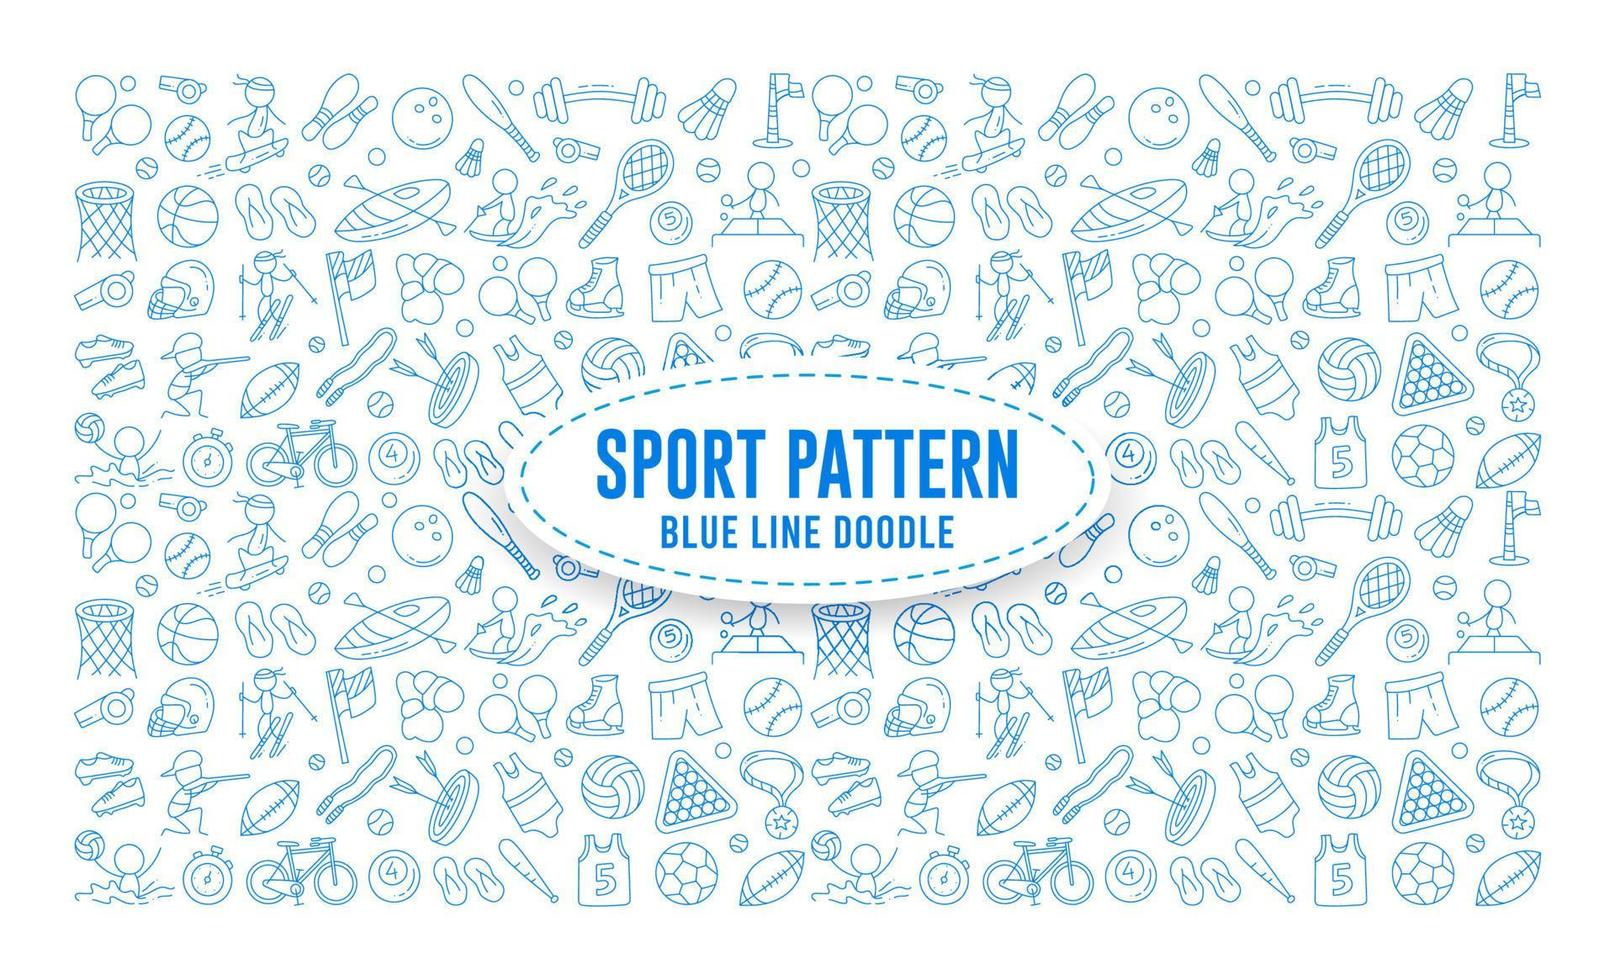 elemento de doodle de deporte, doodle de patrón de deporte, deporte de doodle de dibujo a mano, contorno de conjunto de iconos de deporte vector